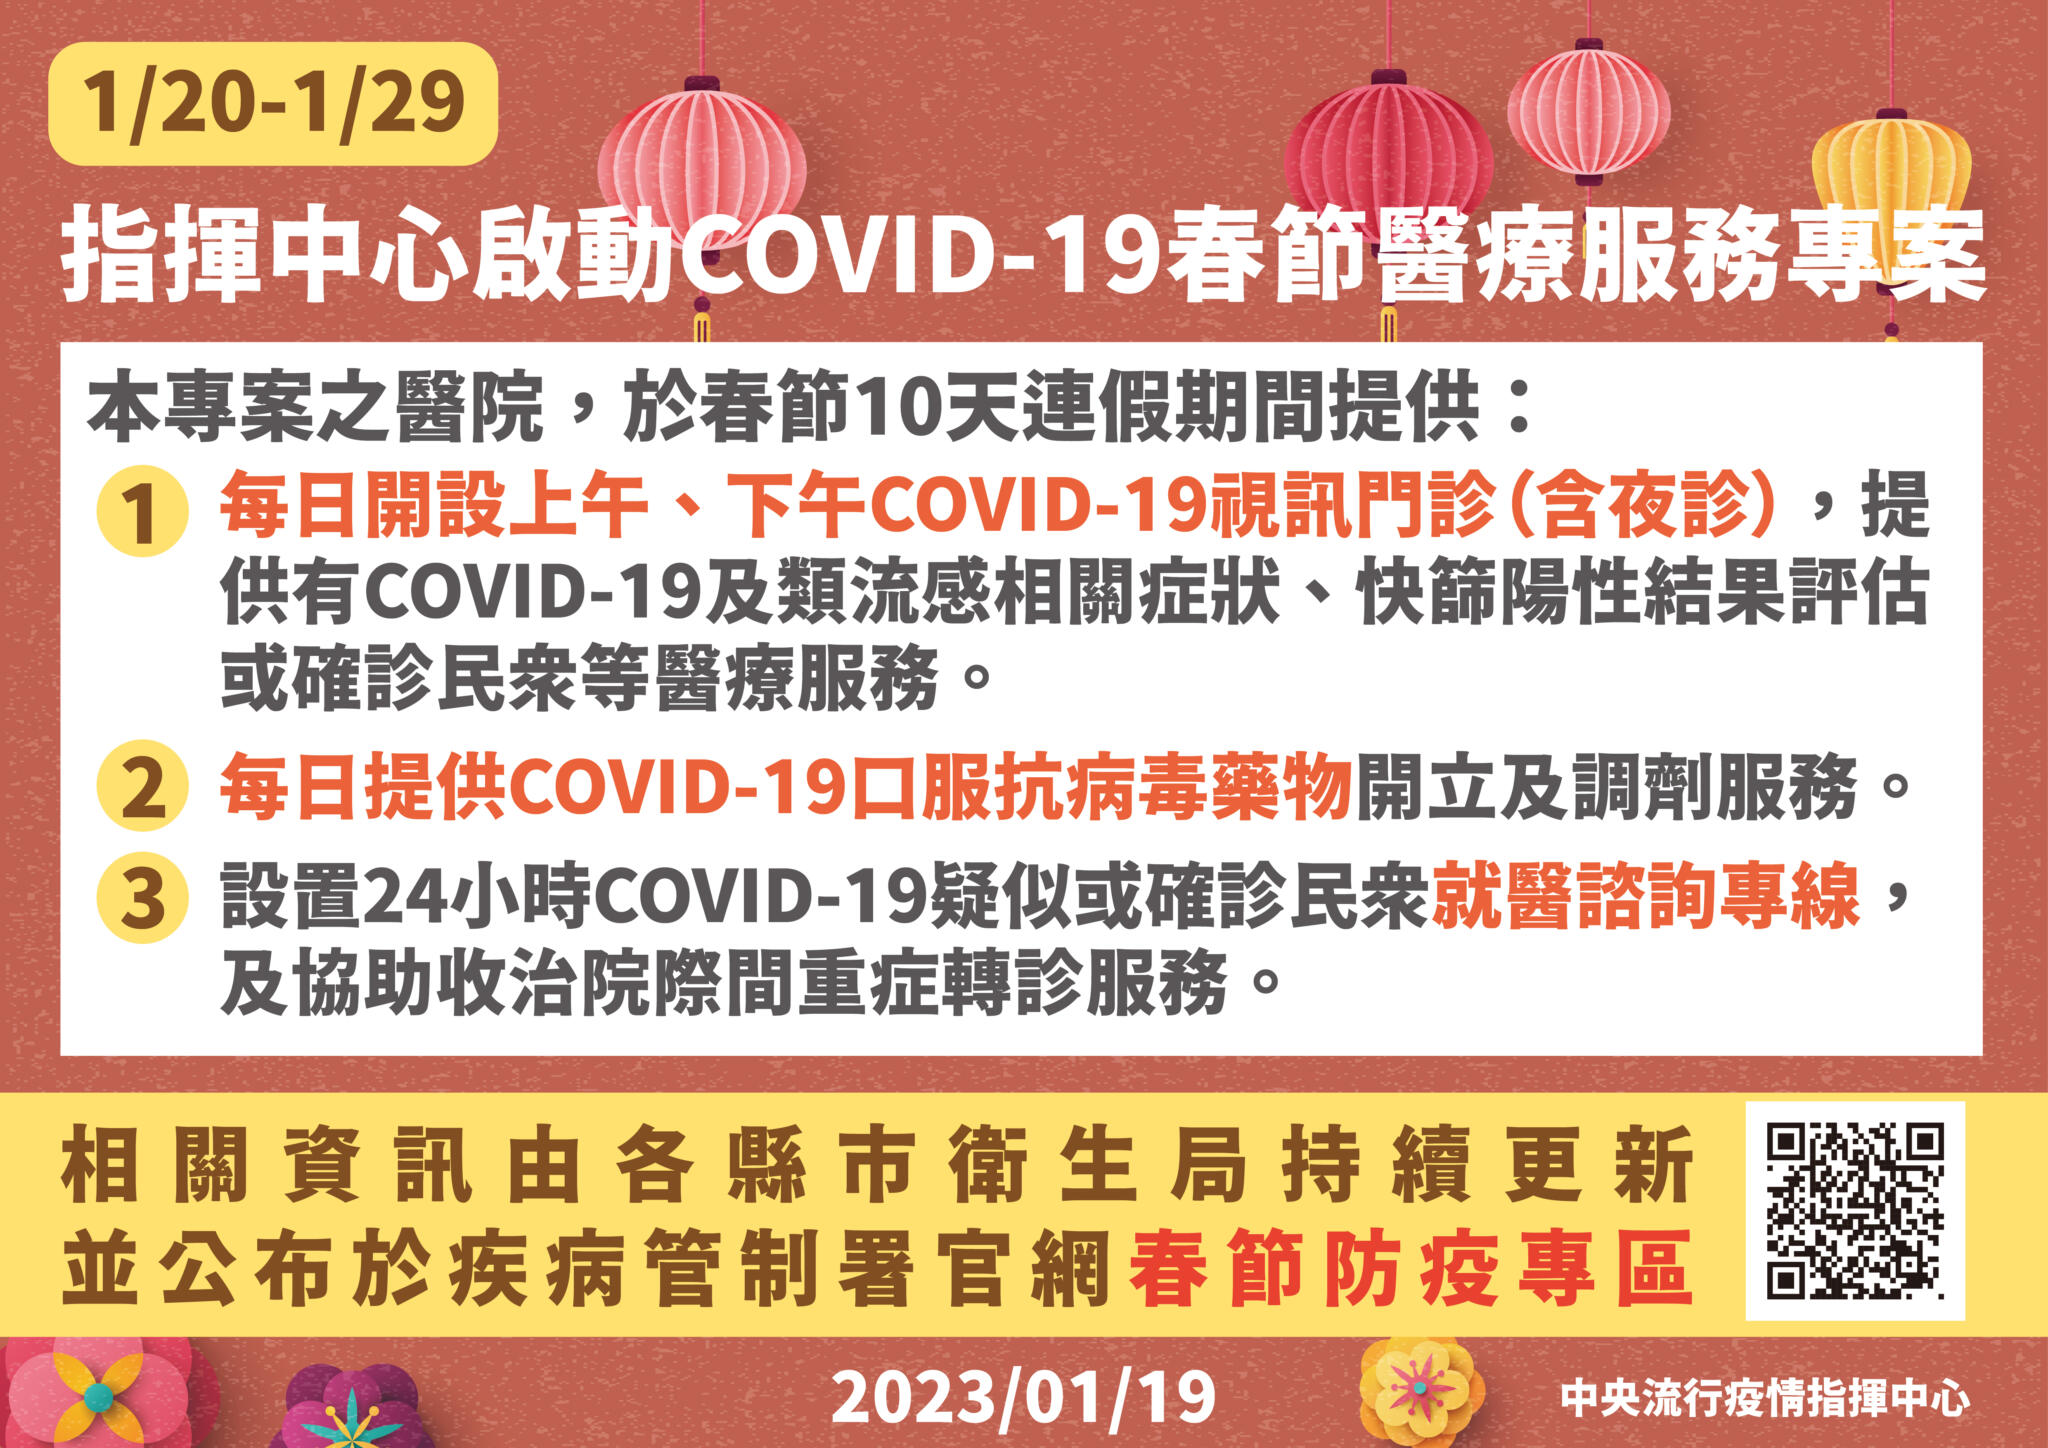 15 0119 春節期間開設COVID 19視訊門診及就醫諮詢